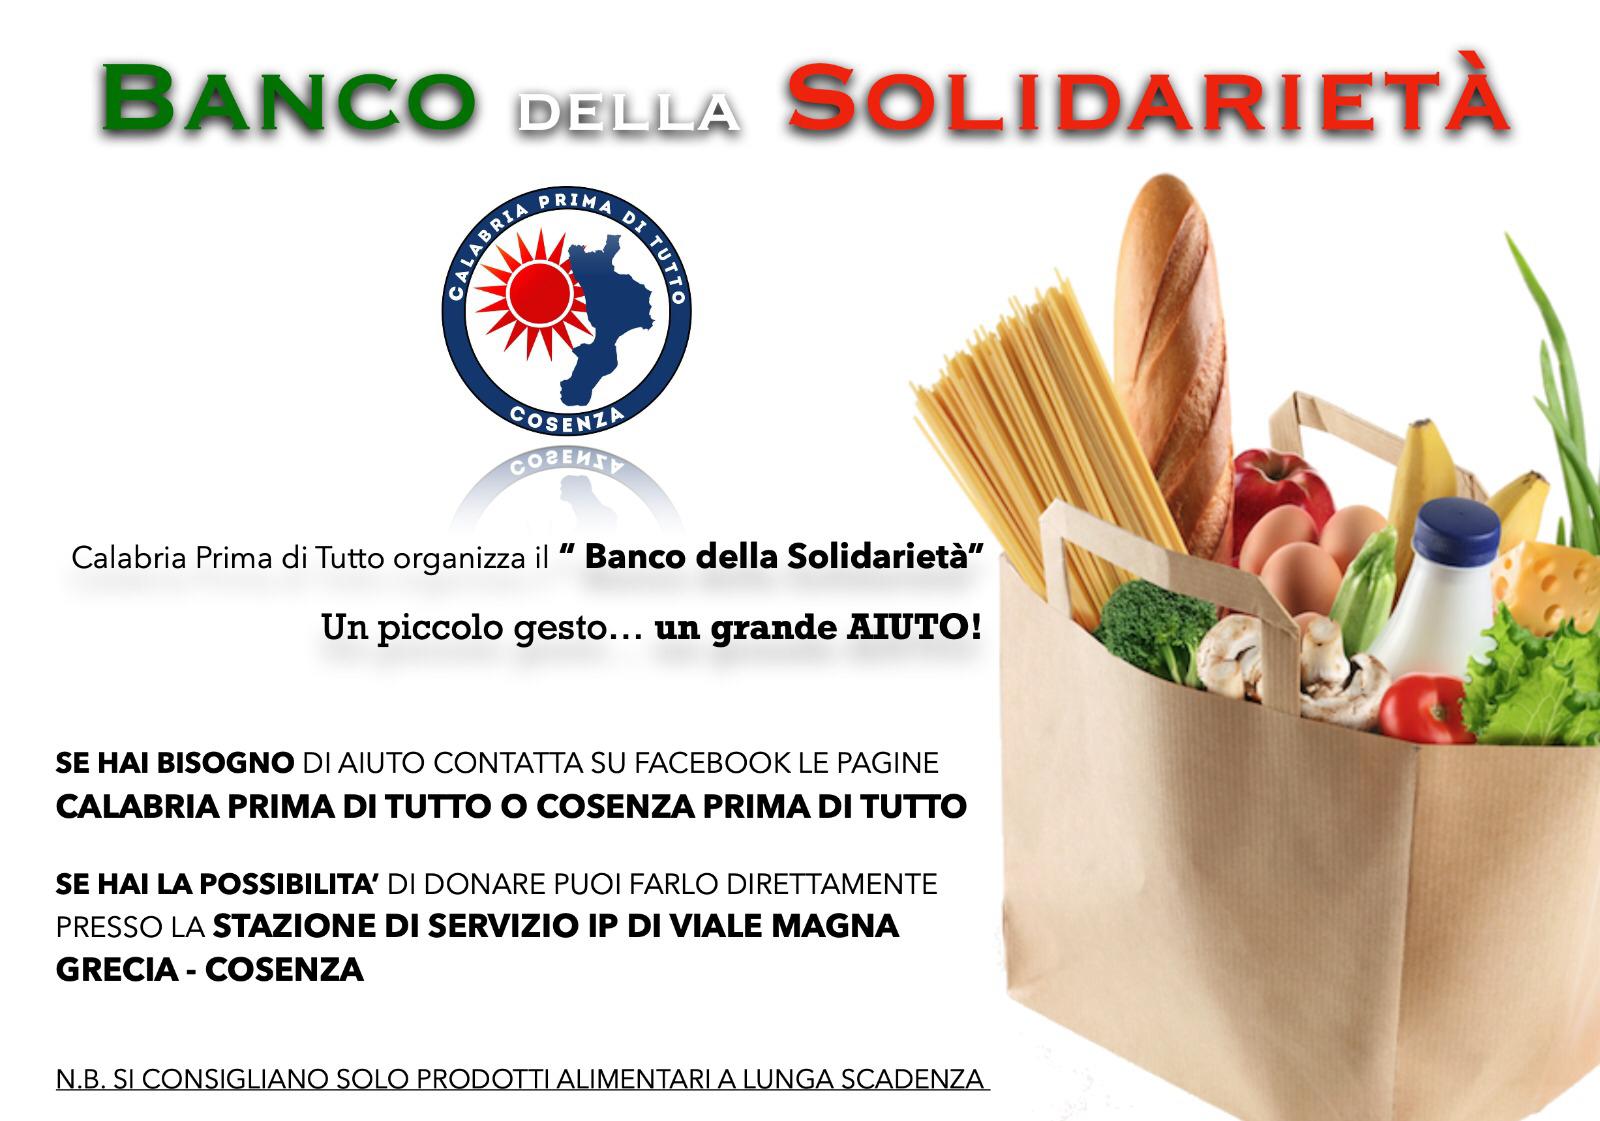 Banco della solidarietà organizzato da Calabria Prima di tutto